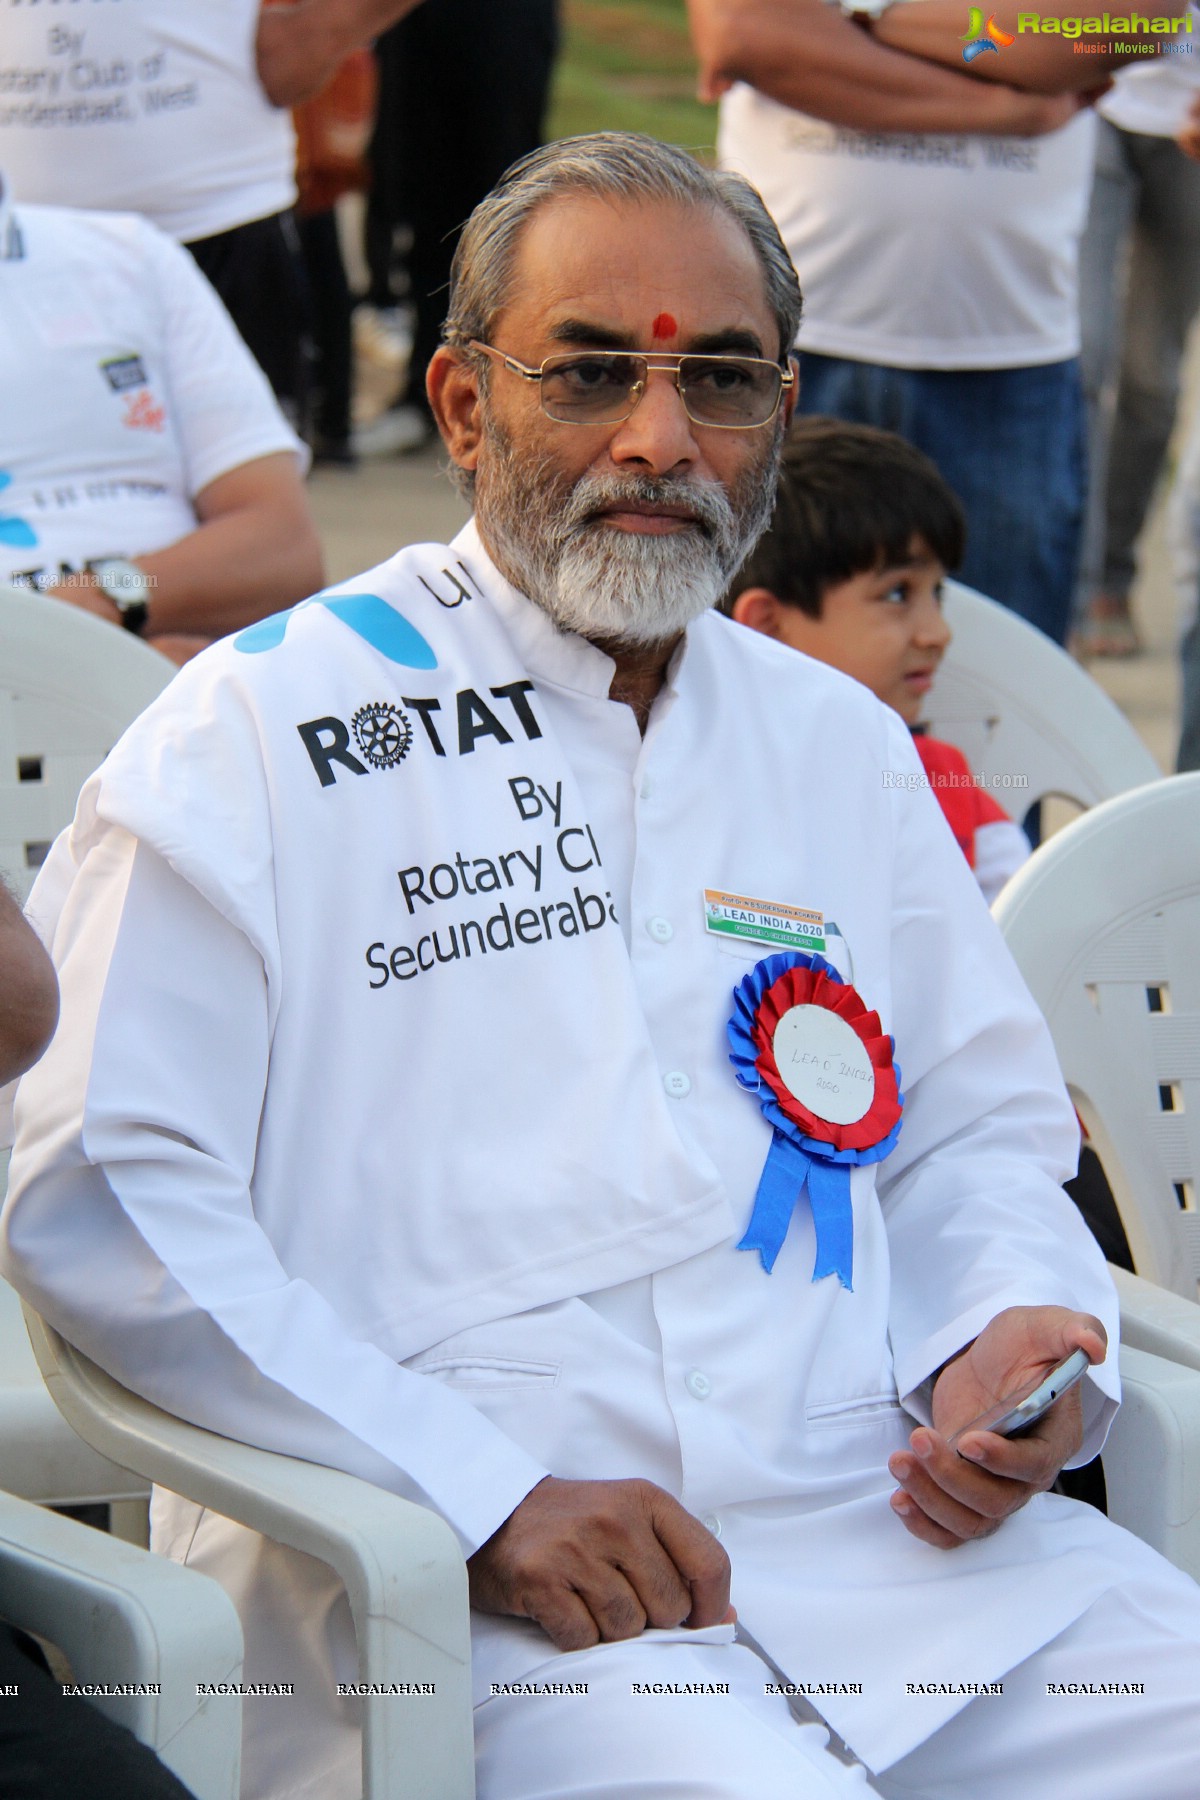 Uninor Rotathon (Rotary 108 Walk), Hyderabad